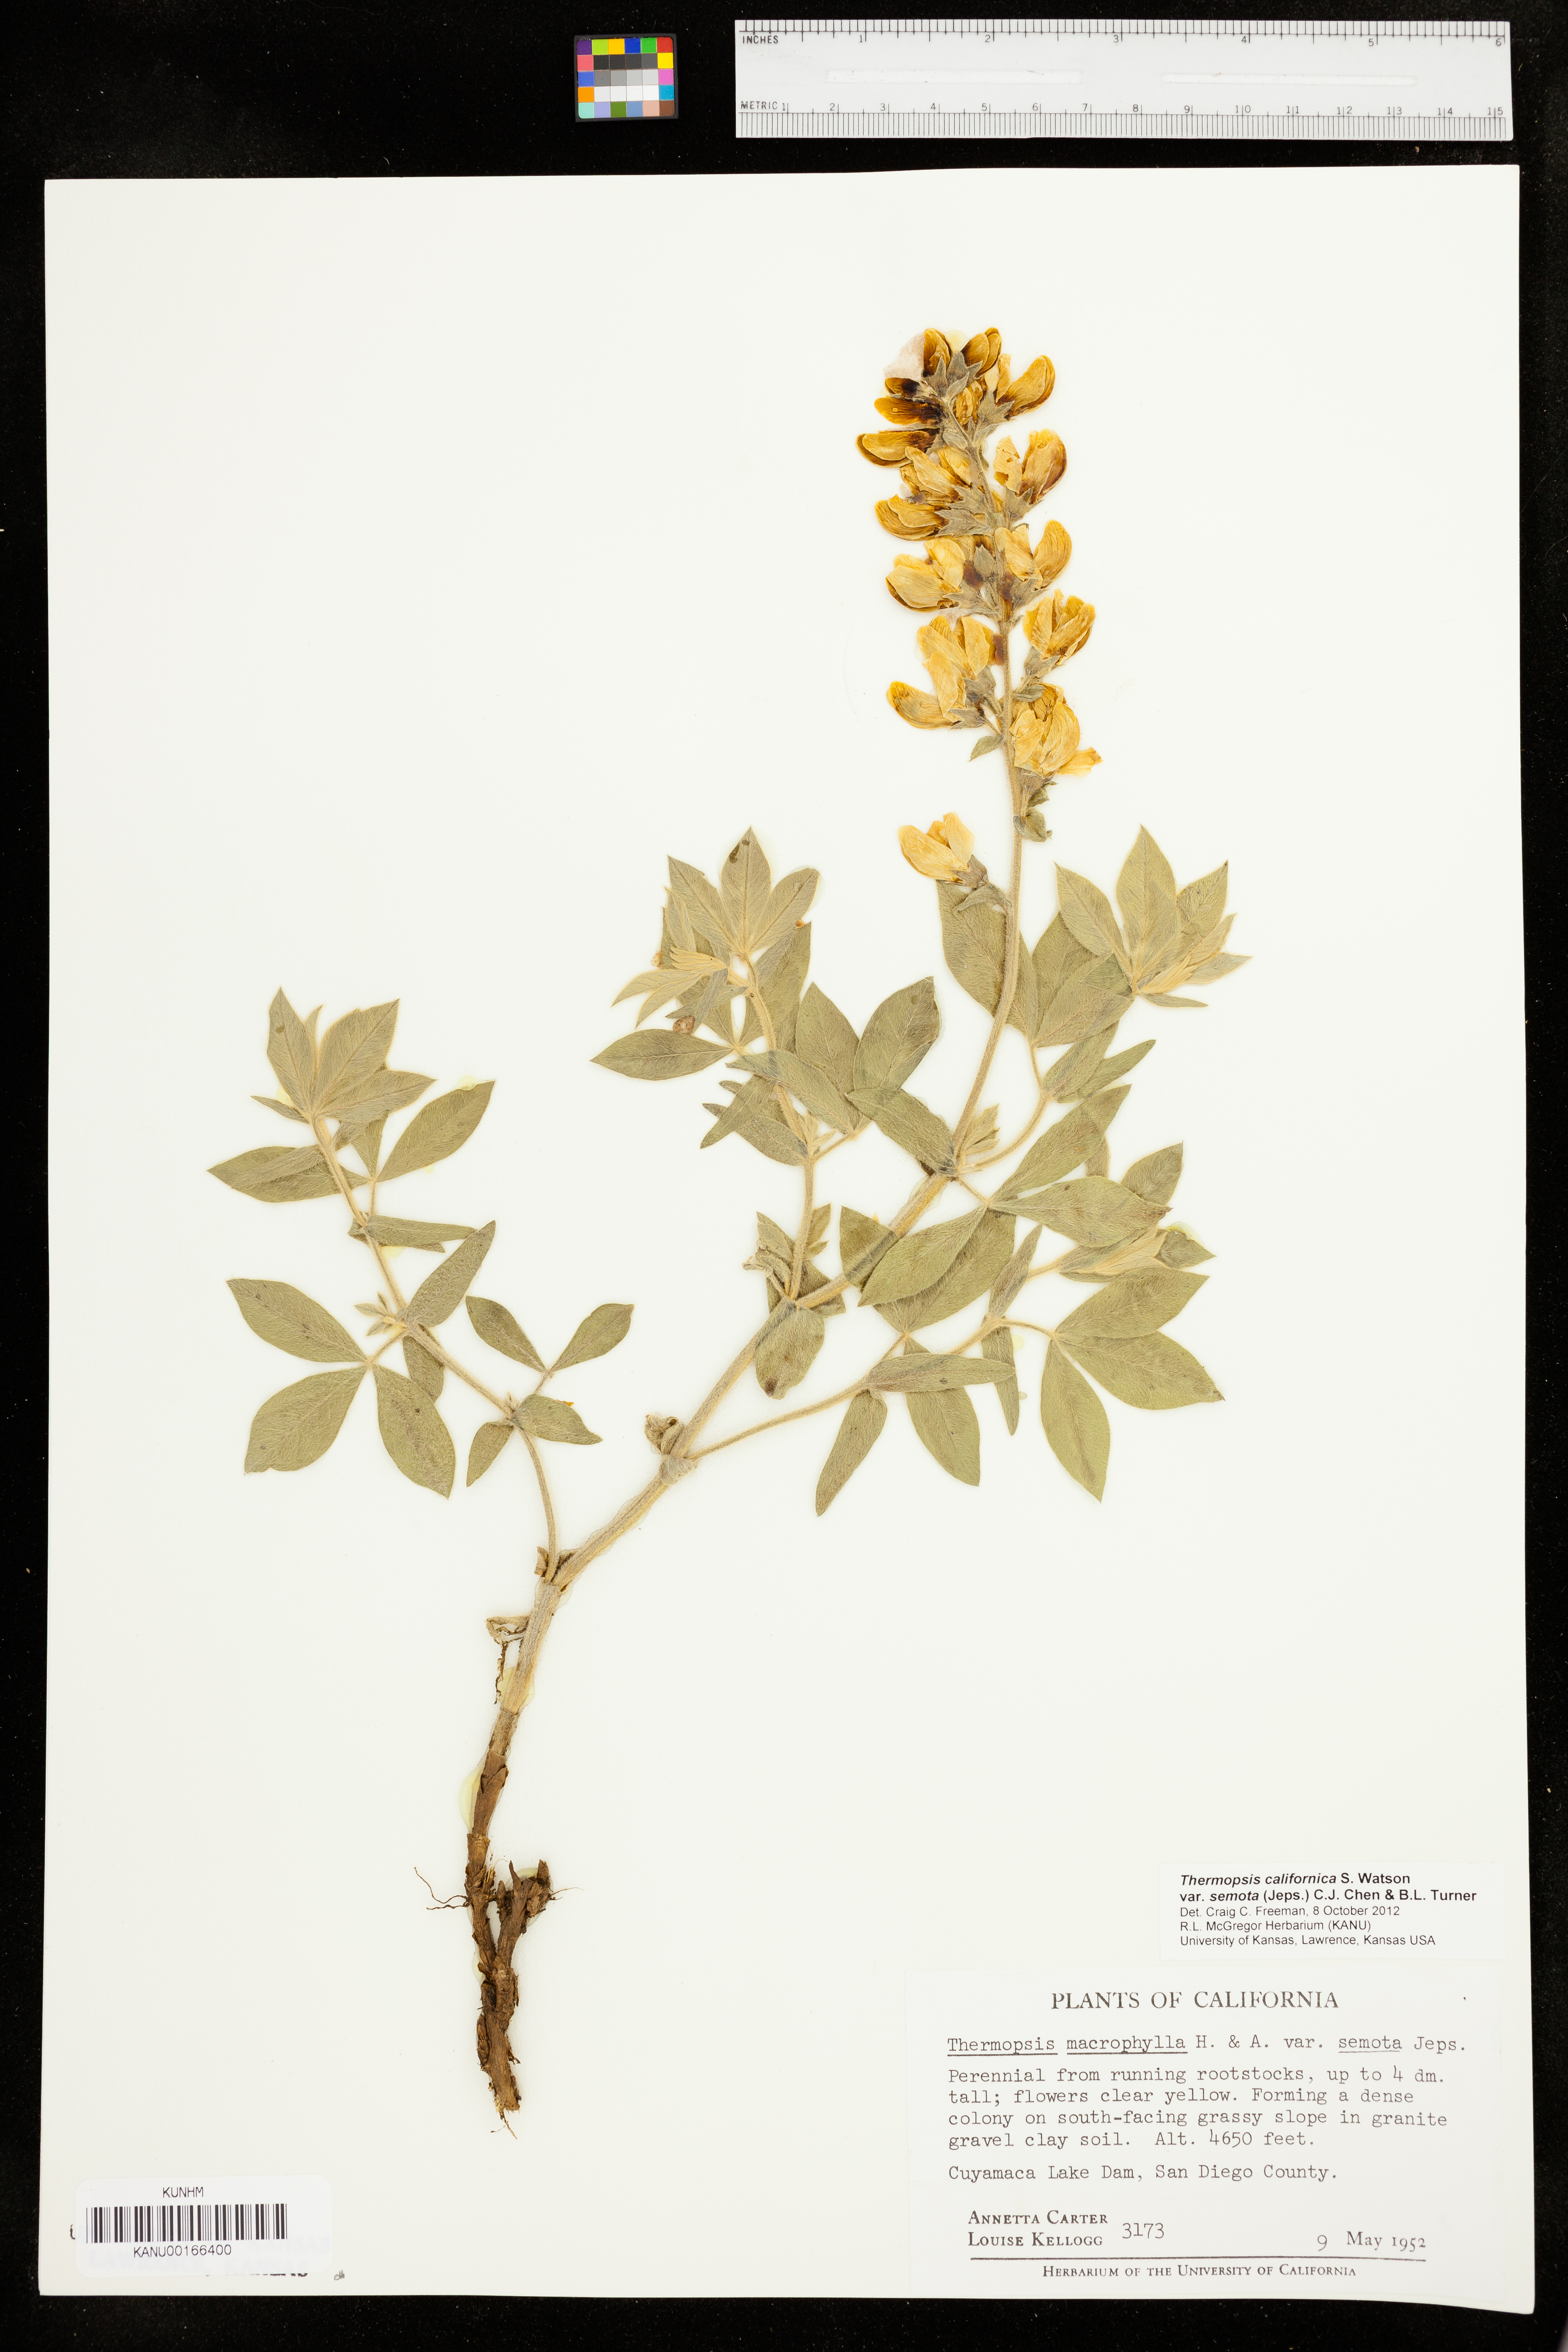 Thermopsis macrophylla var. semota image